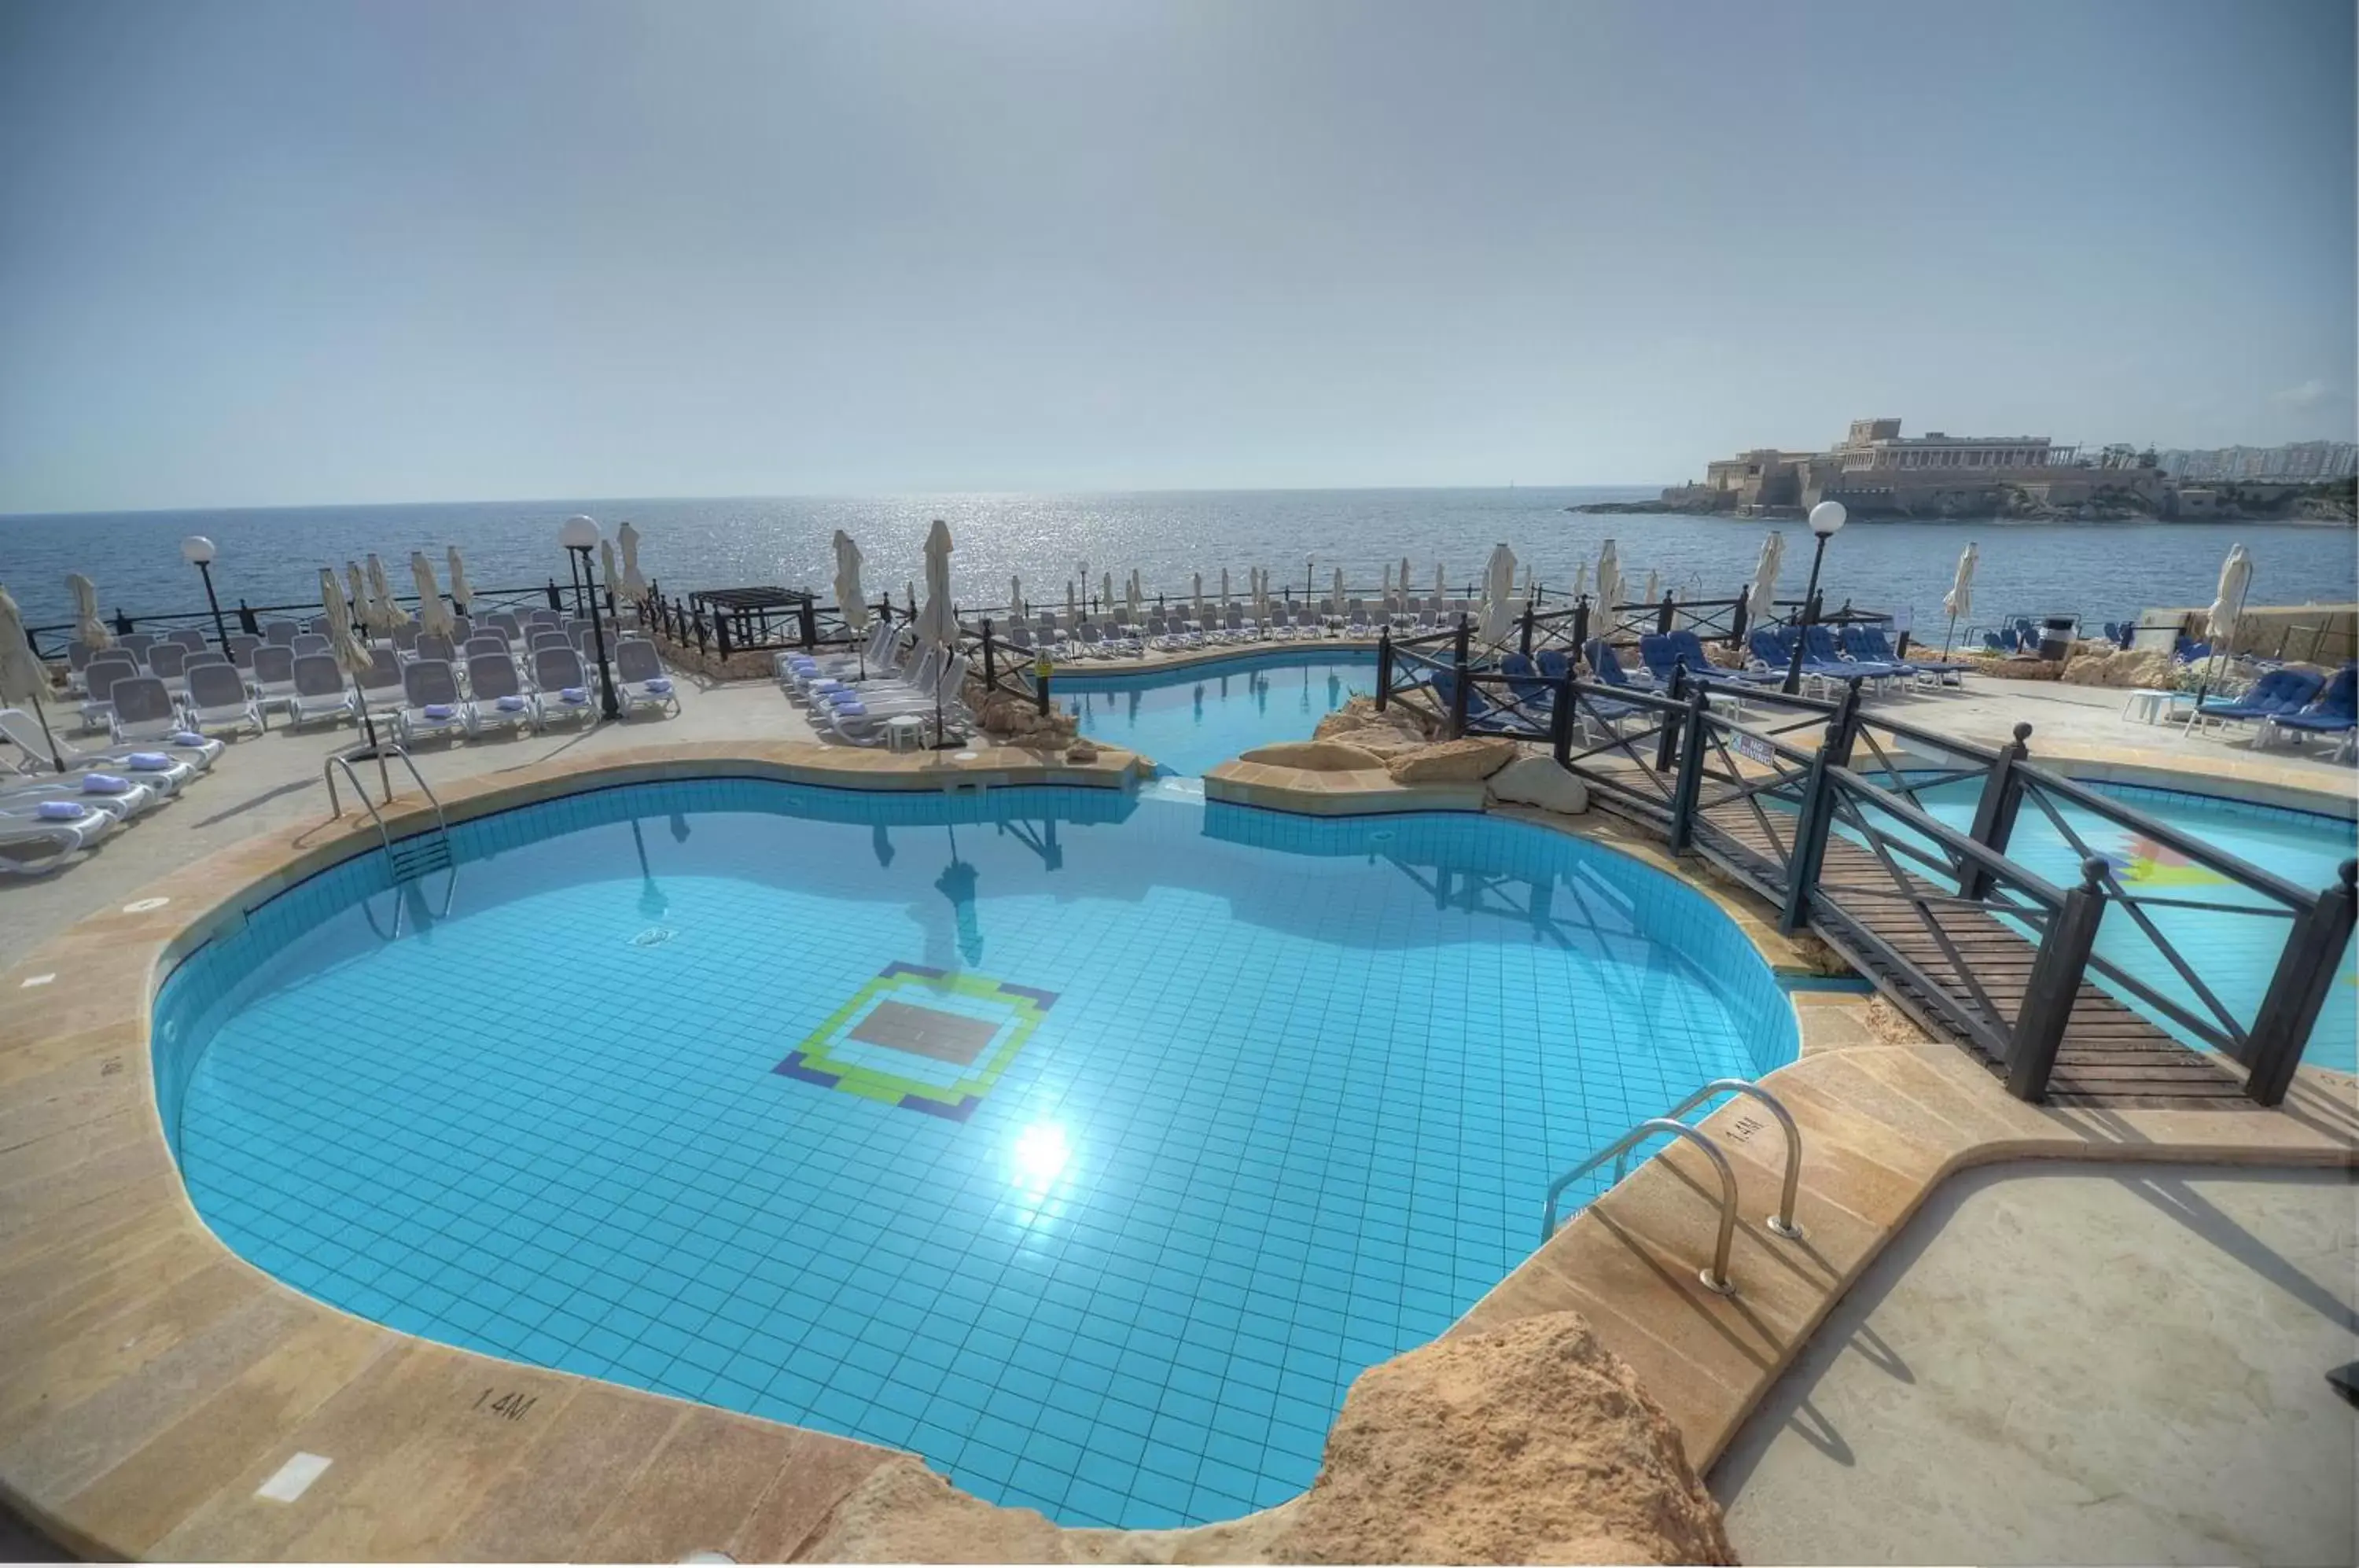 Swimming Pool in Radisson Blu Resort, Malta St. Julian's